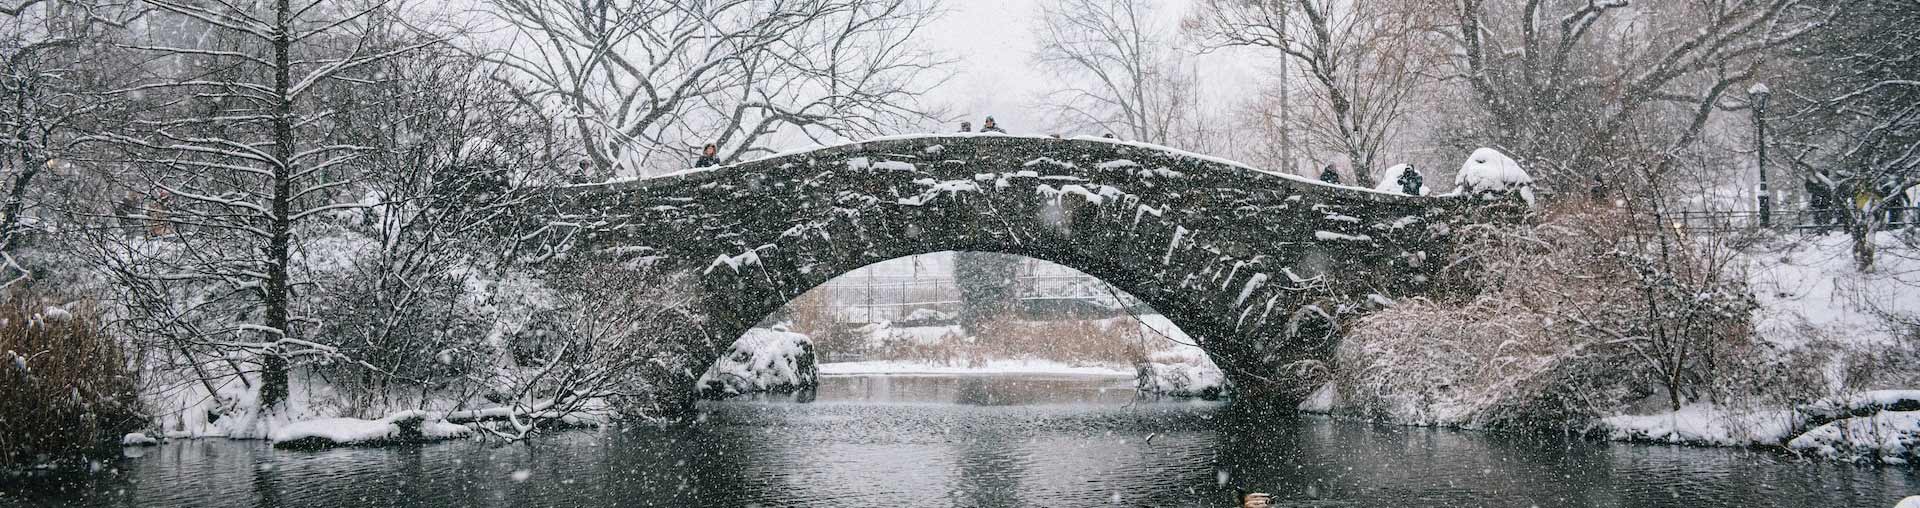 सेंट्रल पार्क न्यूयॉर्क शहर पृष्ठभूमि में पत्थर के पुल के साथ बर्फबारी